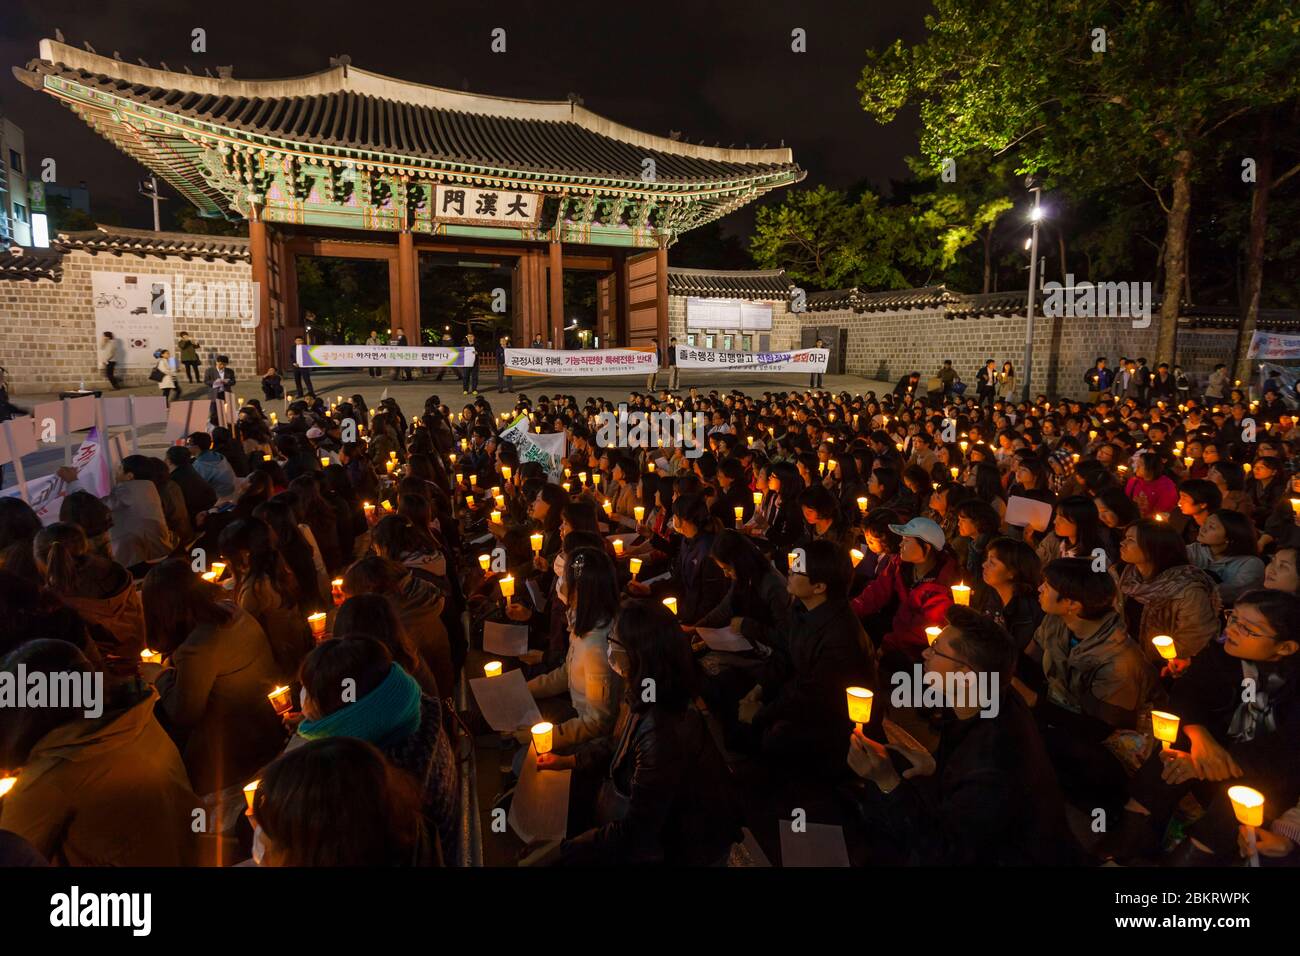 Corée du Sud, Séoul, Palais Deoksugung, mouvement politique Occupy, veillée aux chandelles, manifestants tenant des bougies Banque D'Images